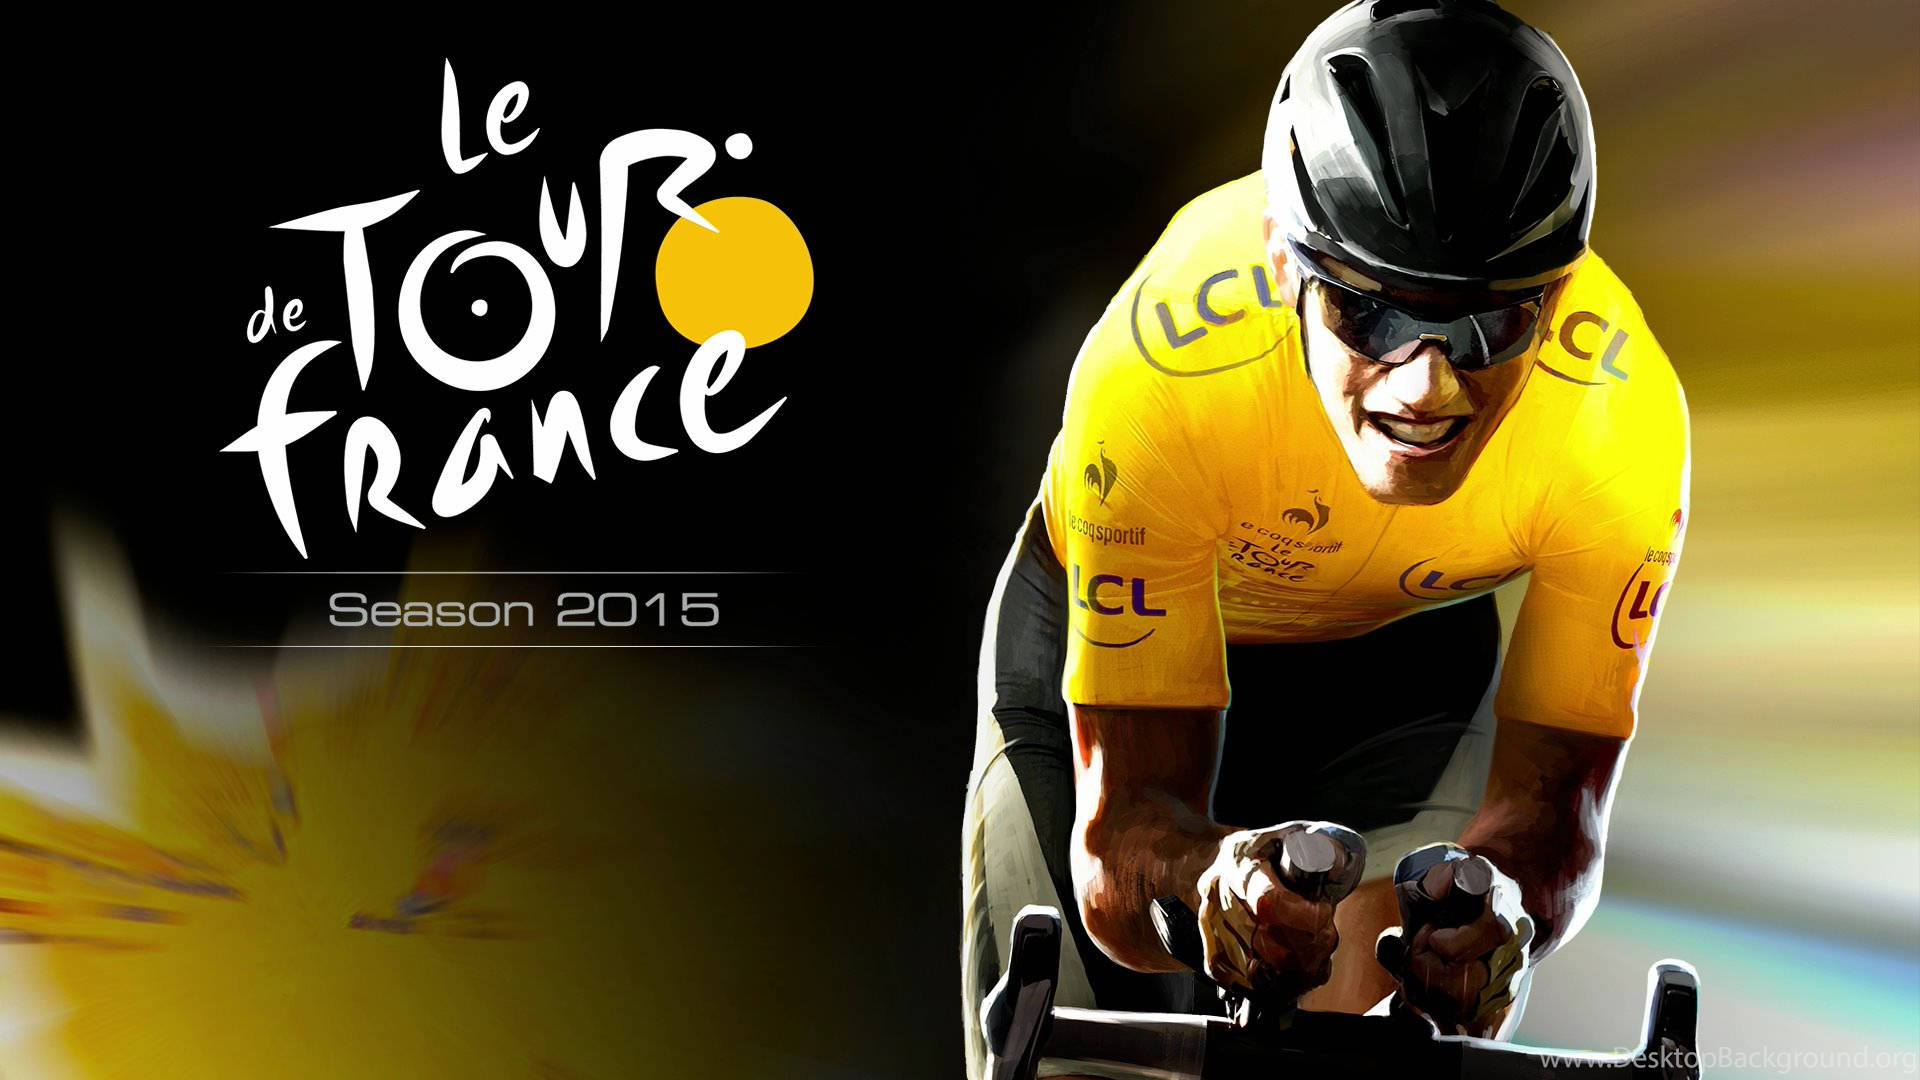 Le Tour De France Season 2015 Background